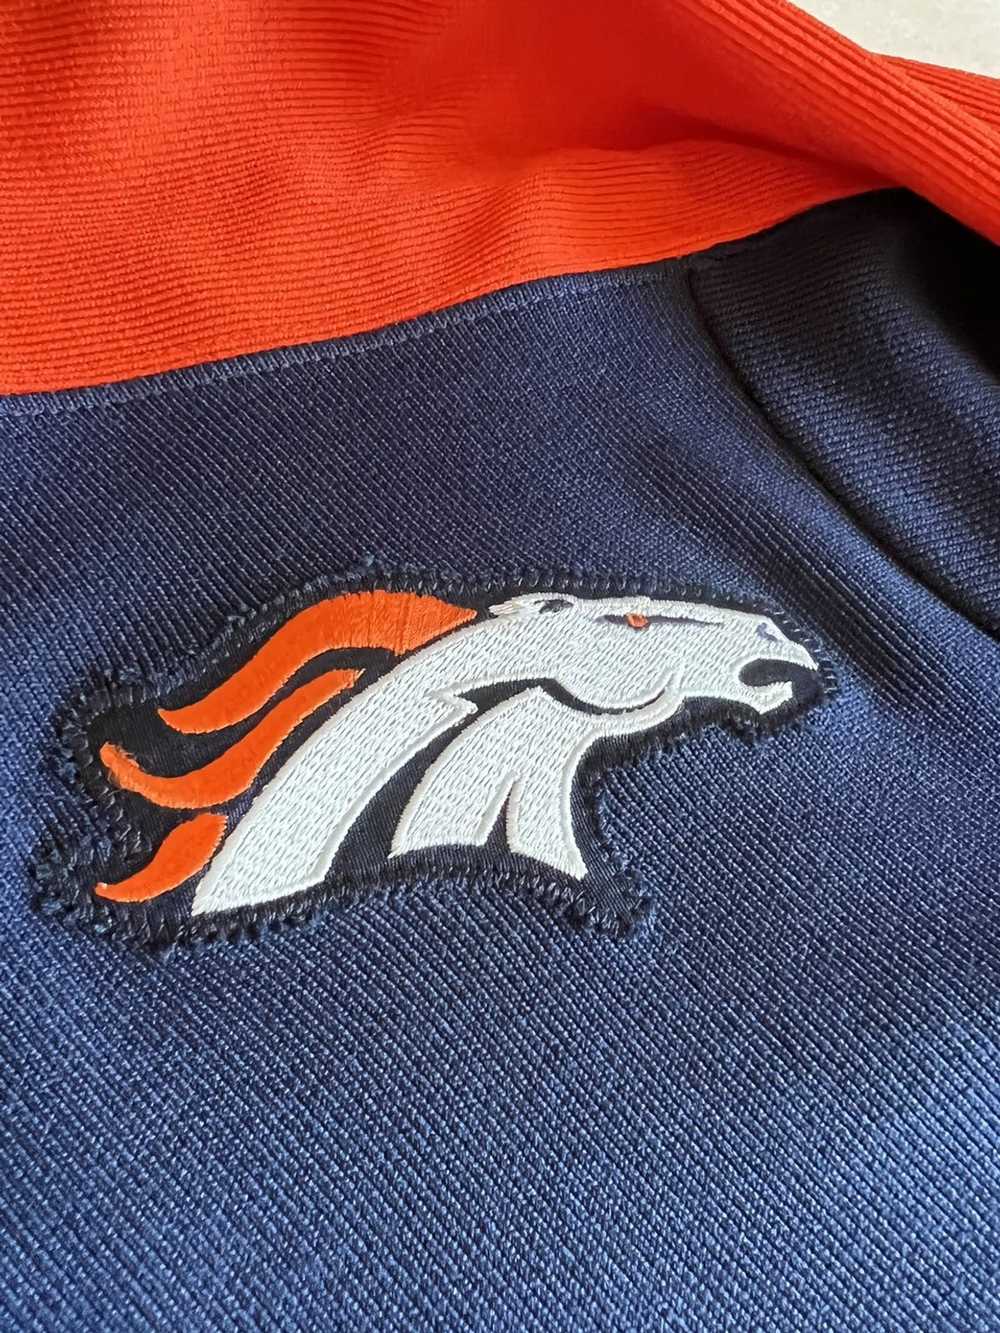 NFL Denver Broncos Knit Jersey - image 3